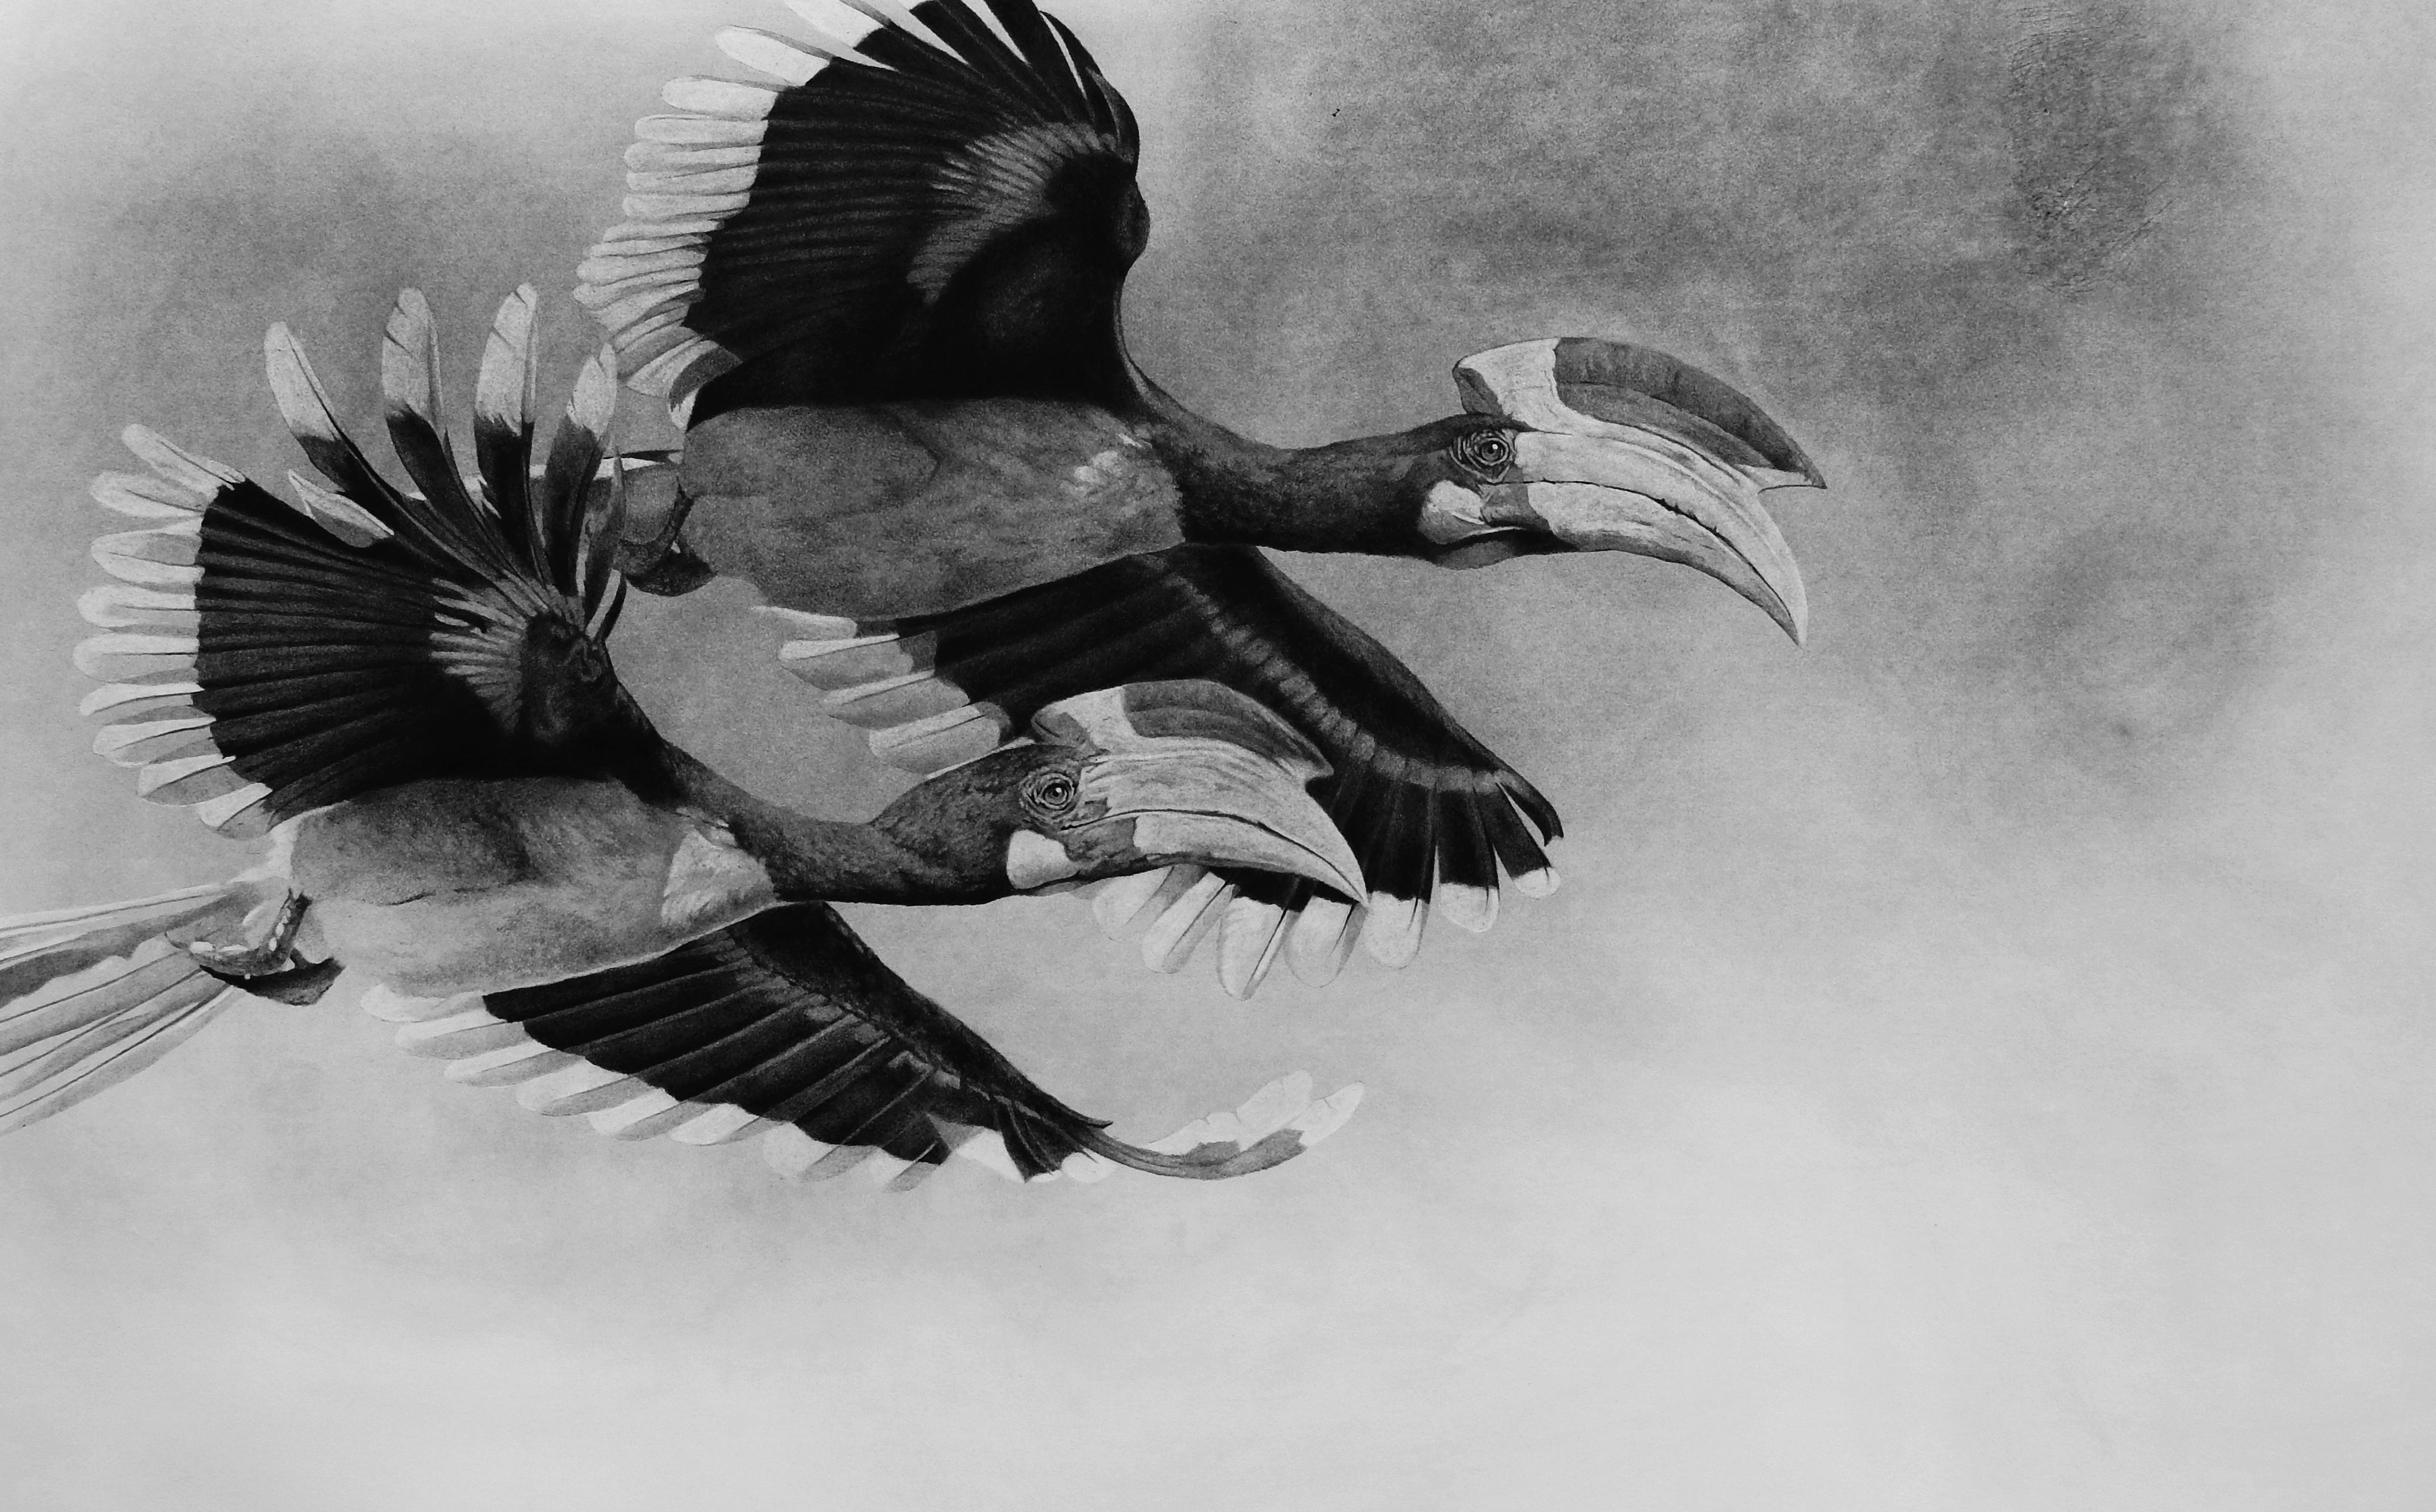 Bleistiftzeichnung seltener brasilianischer Vögel mit schwarzem und weißem Grund von Meister italienischer Malerei